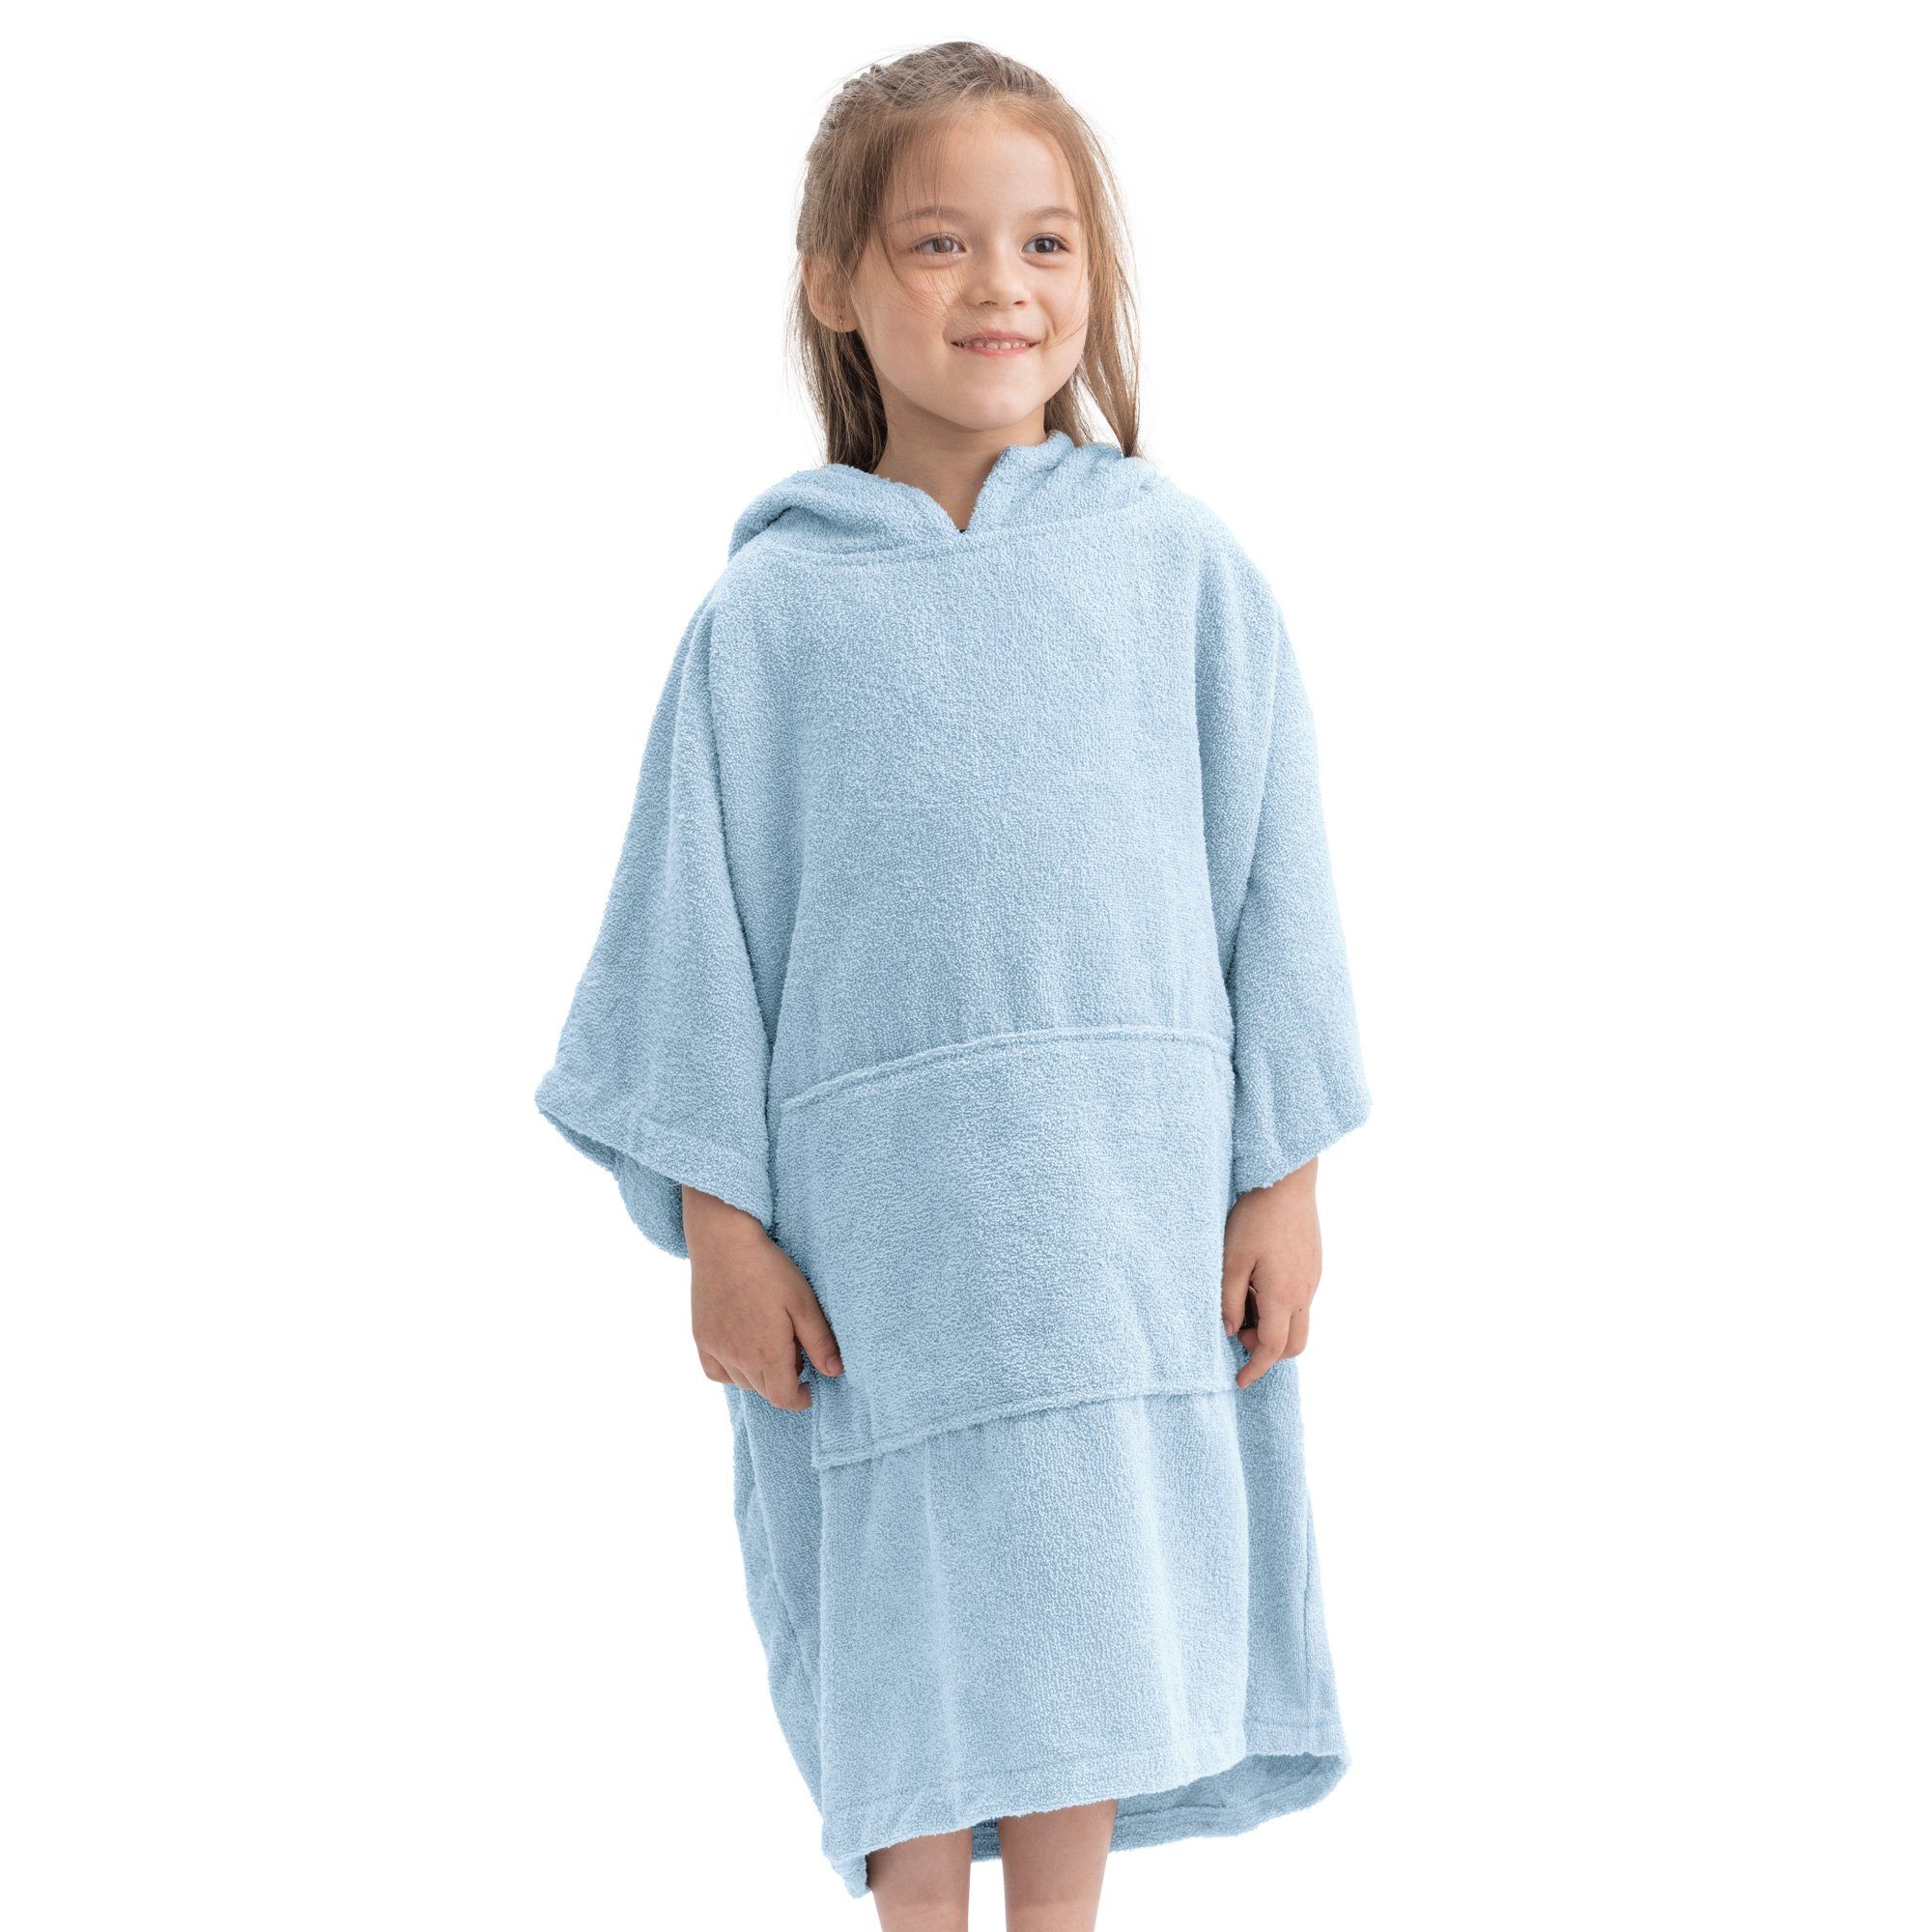 HOMELEVEL Kinder Frottee Bademantel aus 100% Baumwolle für Mädchen und Jungen